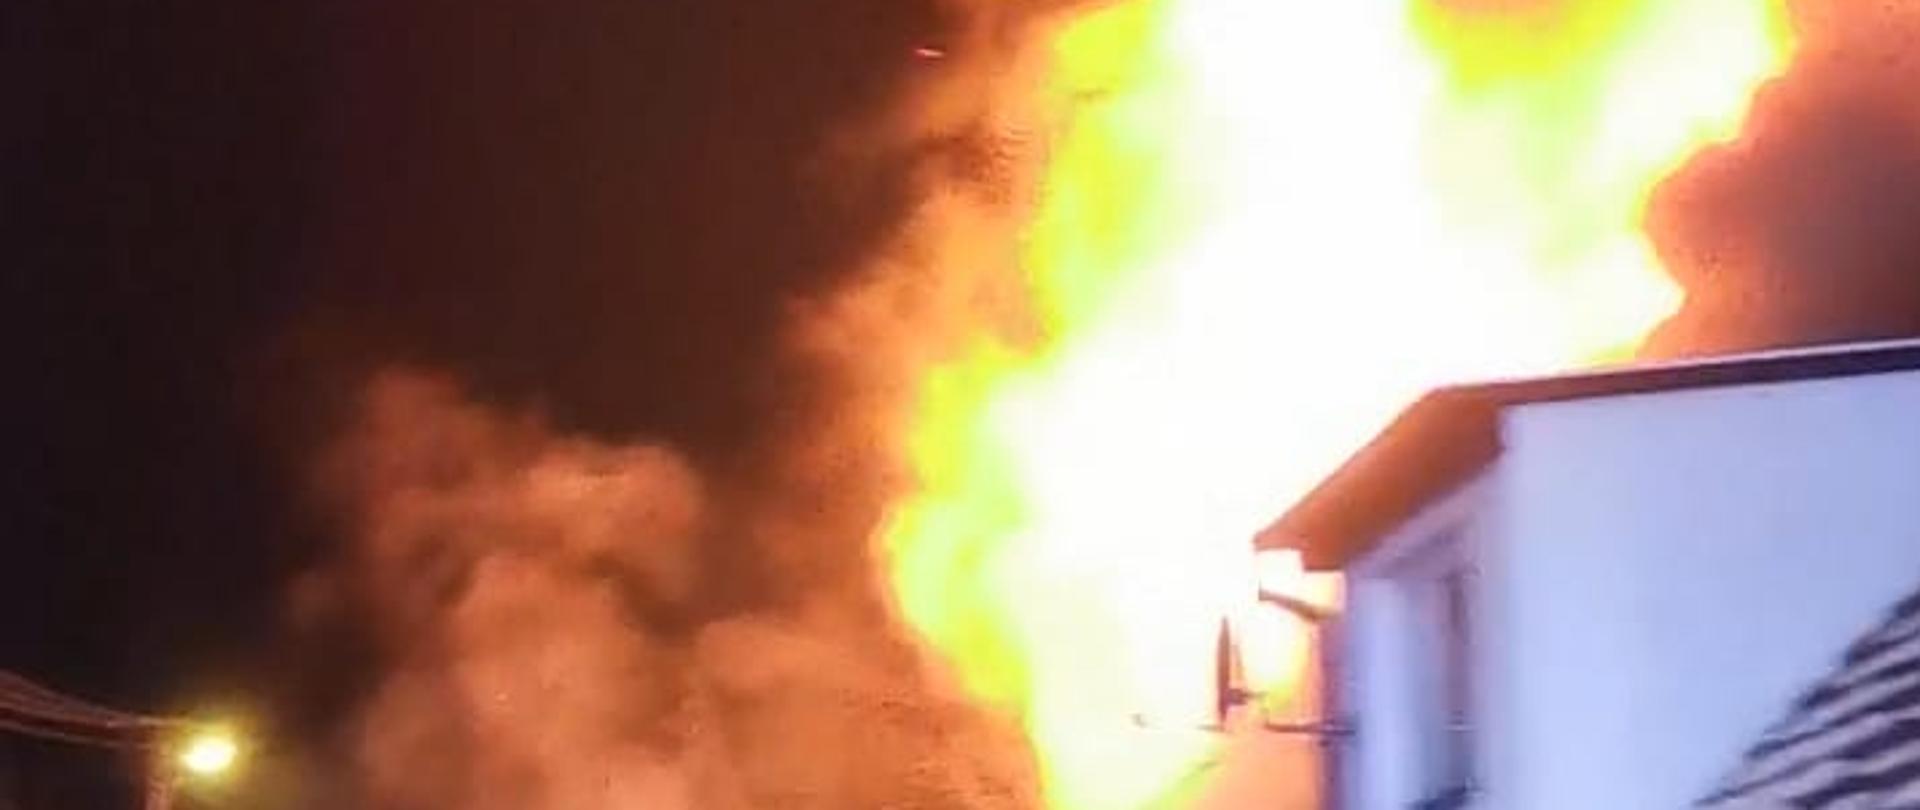 Groźny pożar budynku mieszkalno – gospodarczego w Nietkowie - strażacy gaszący pożar